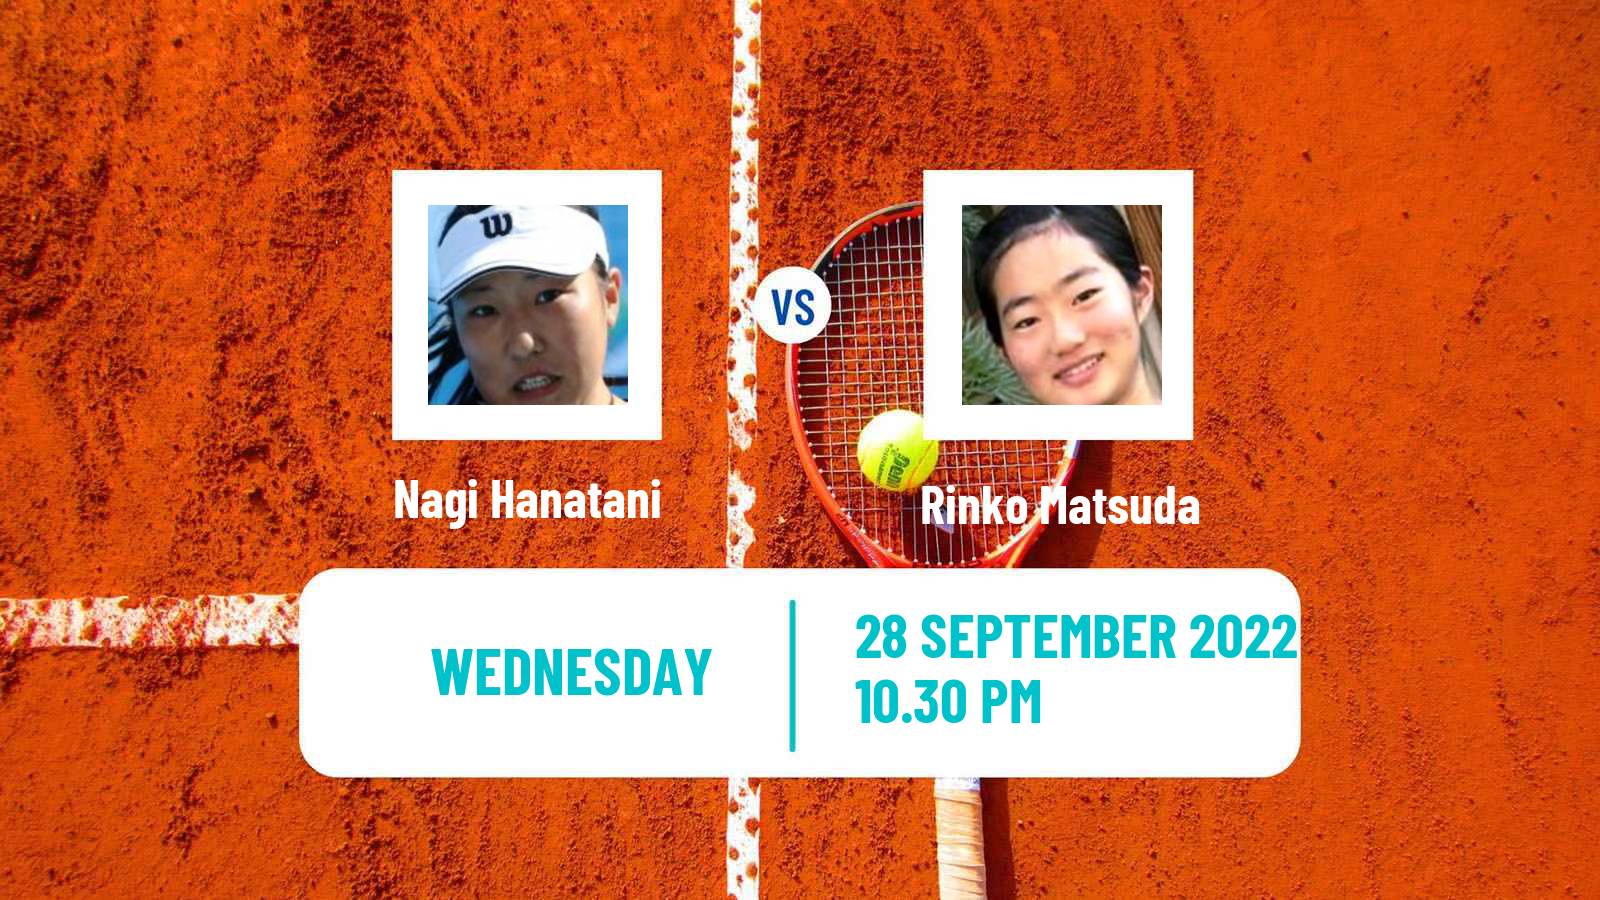 Tennis ITF Tournaments Nagi Hanatani - Rinko Matsuda